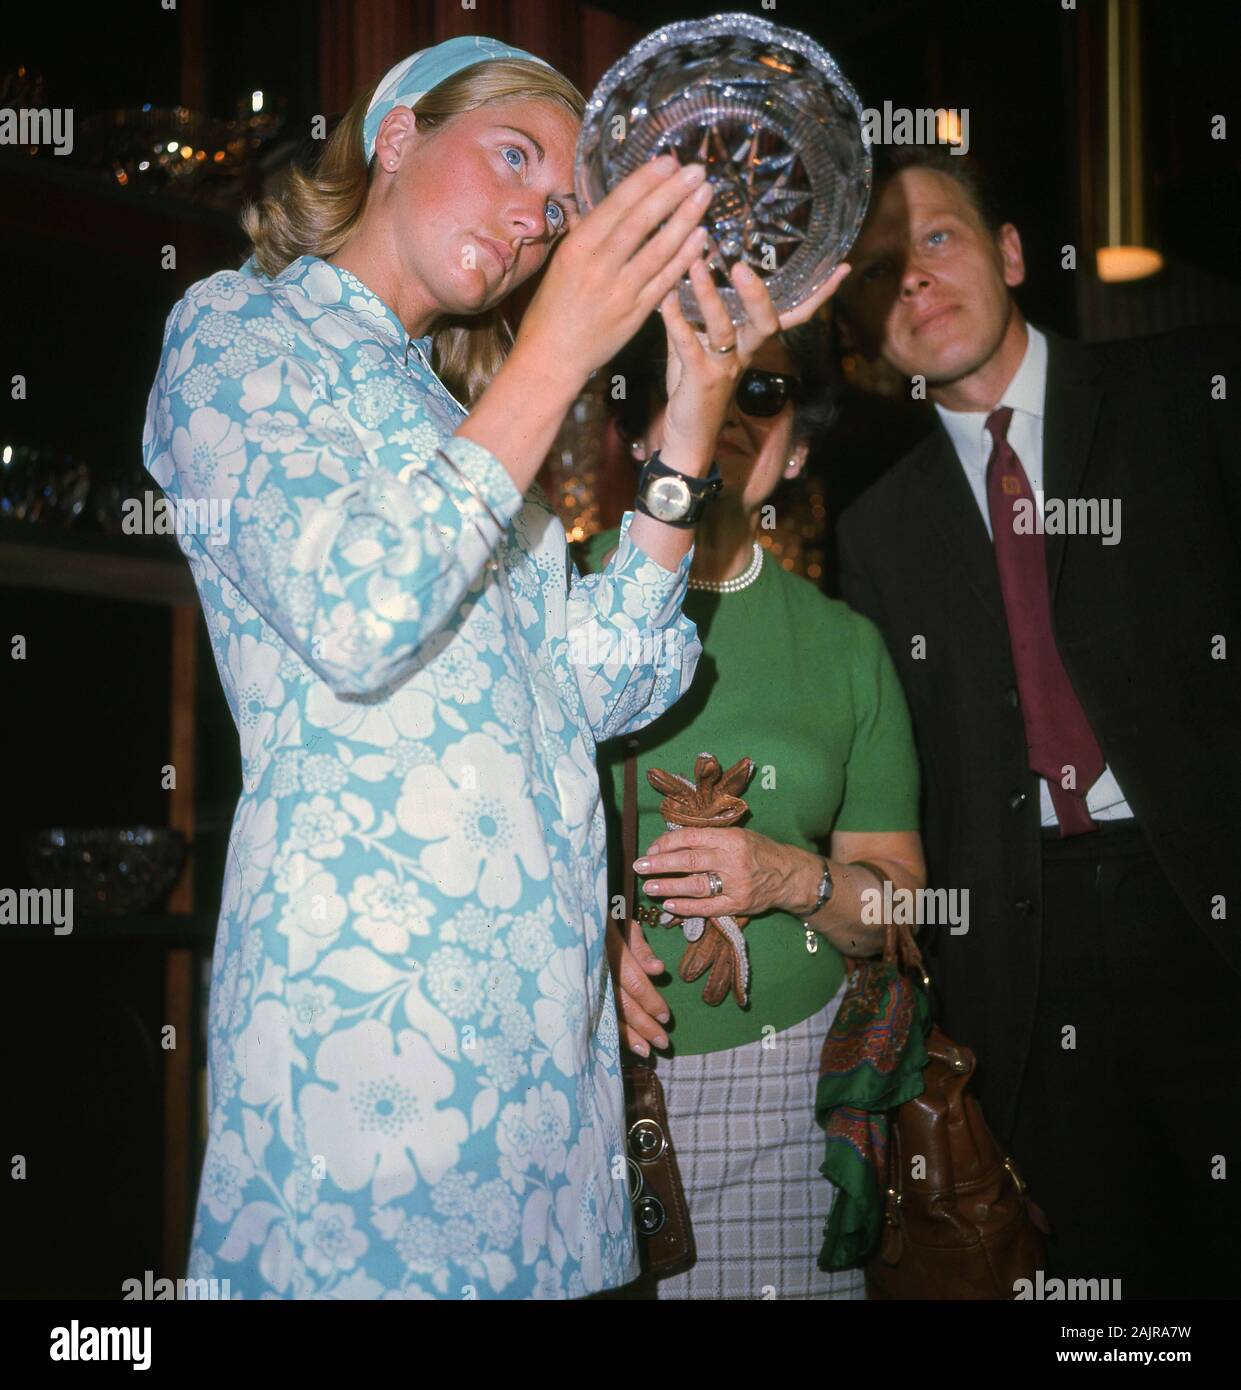 1960, historique, une jeune dame dans une robe à motifs de fleur bleu clair de l'époque étudiant un nouveau bol en verre coupé, Angleterre, Royaume-Uni. Banque D'Images